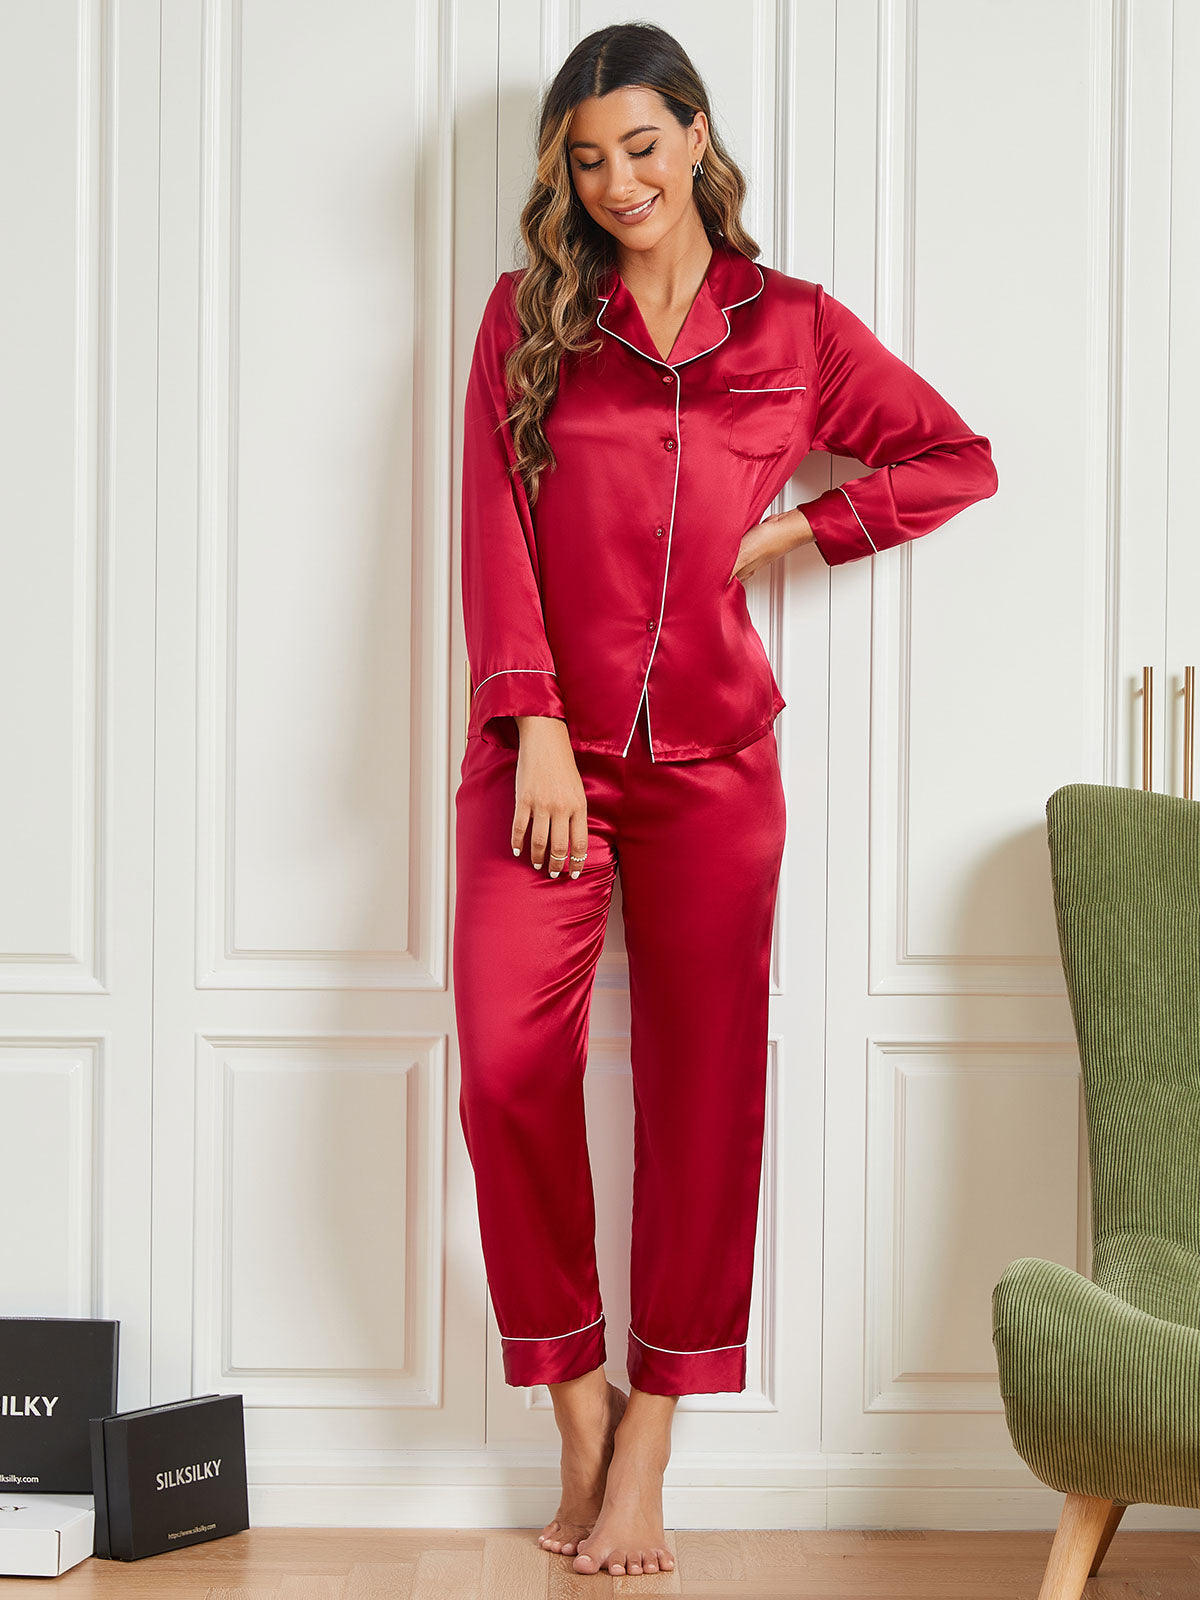 Silksilky Long Sleeve Silk Nightwear Silk Pajamas for Wife – SILKSILKY